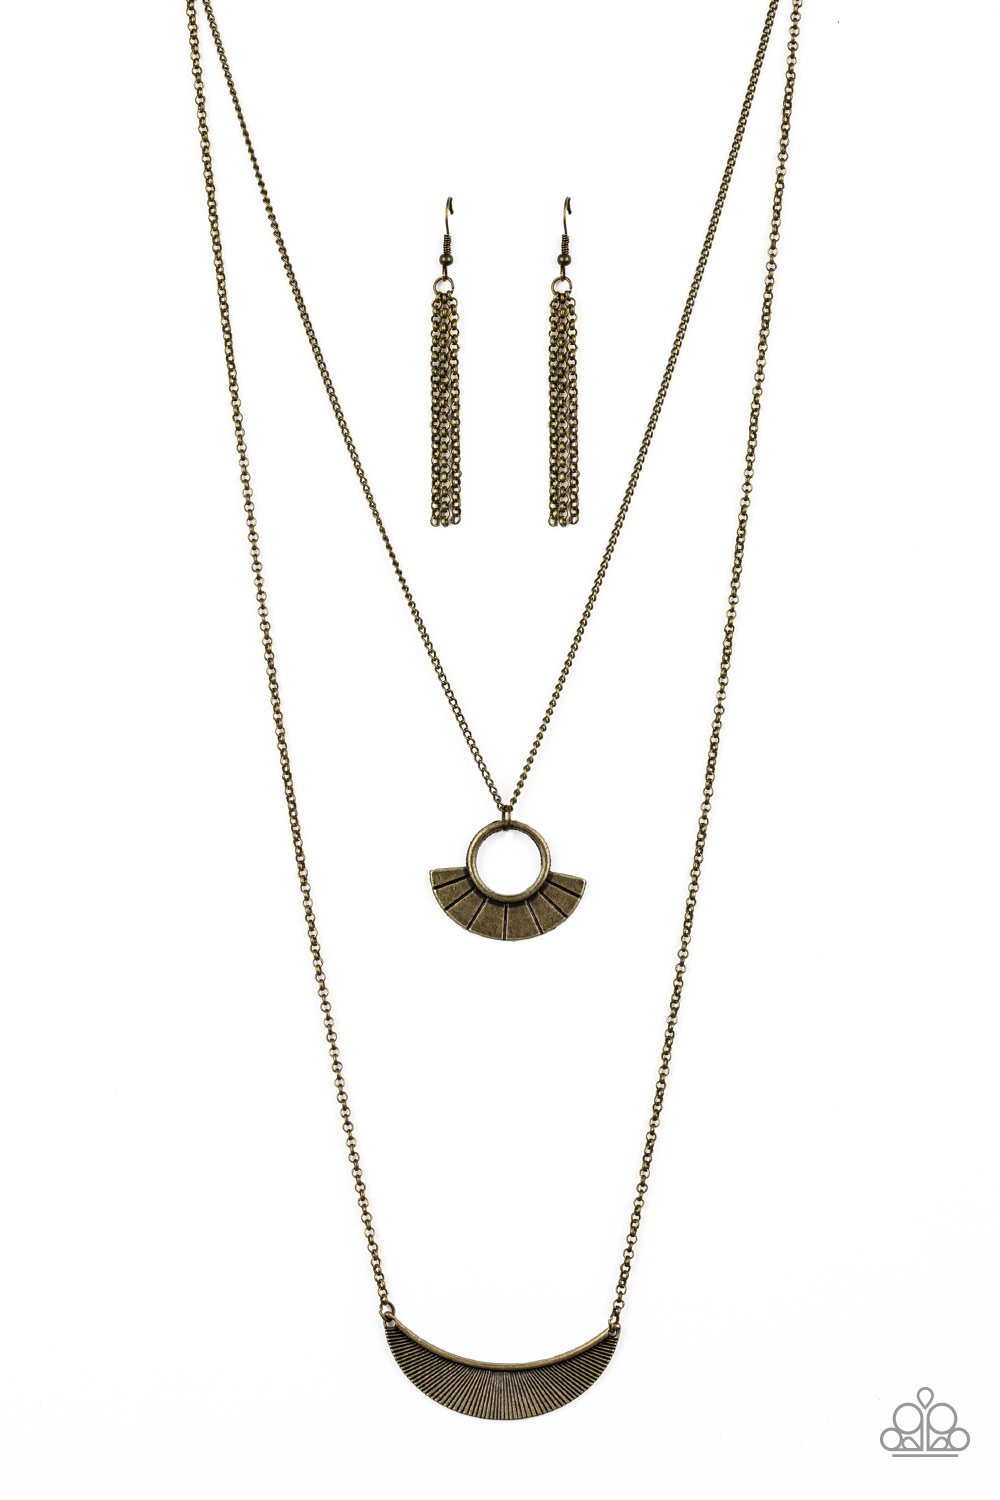 Tribal Trek Brass Necklace freeshipping - JewLz4u Gemstone Gallery